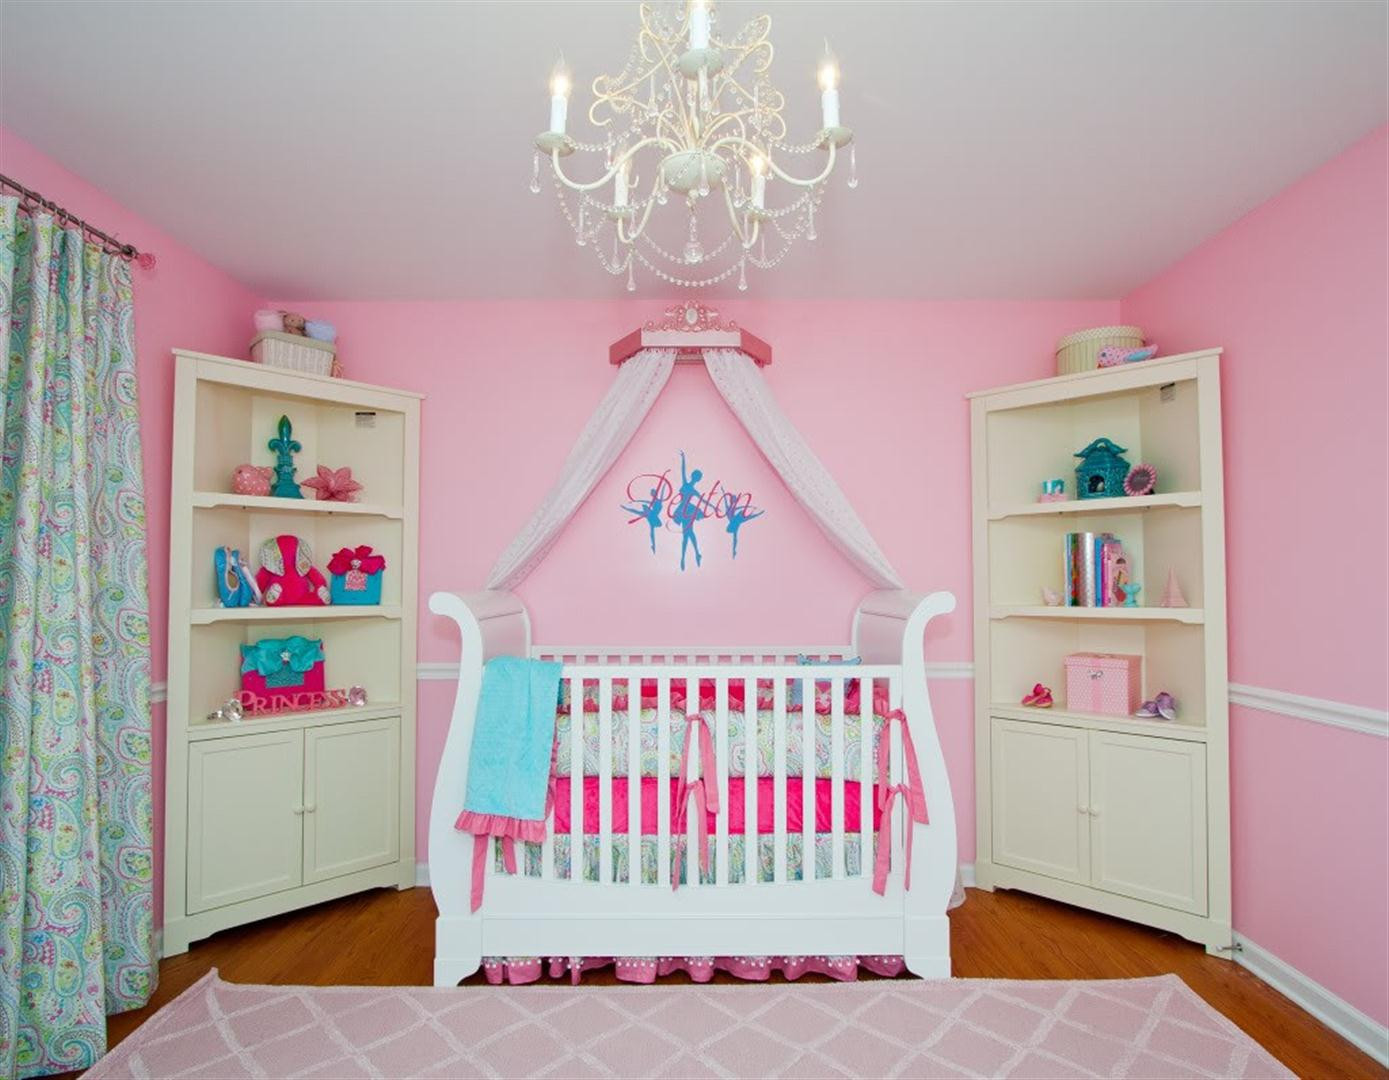 Chandelier For Girl Bedroom
 chandelier for baby girls bedroom CondoInteriorDesign